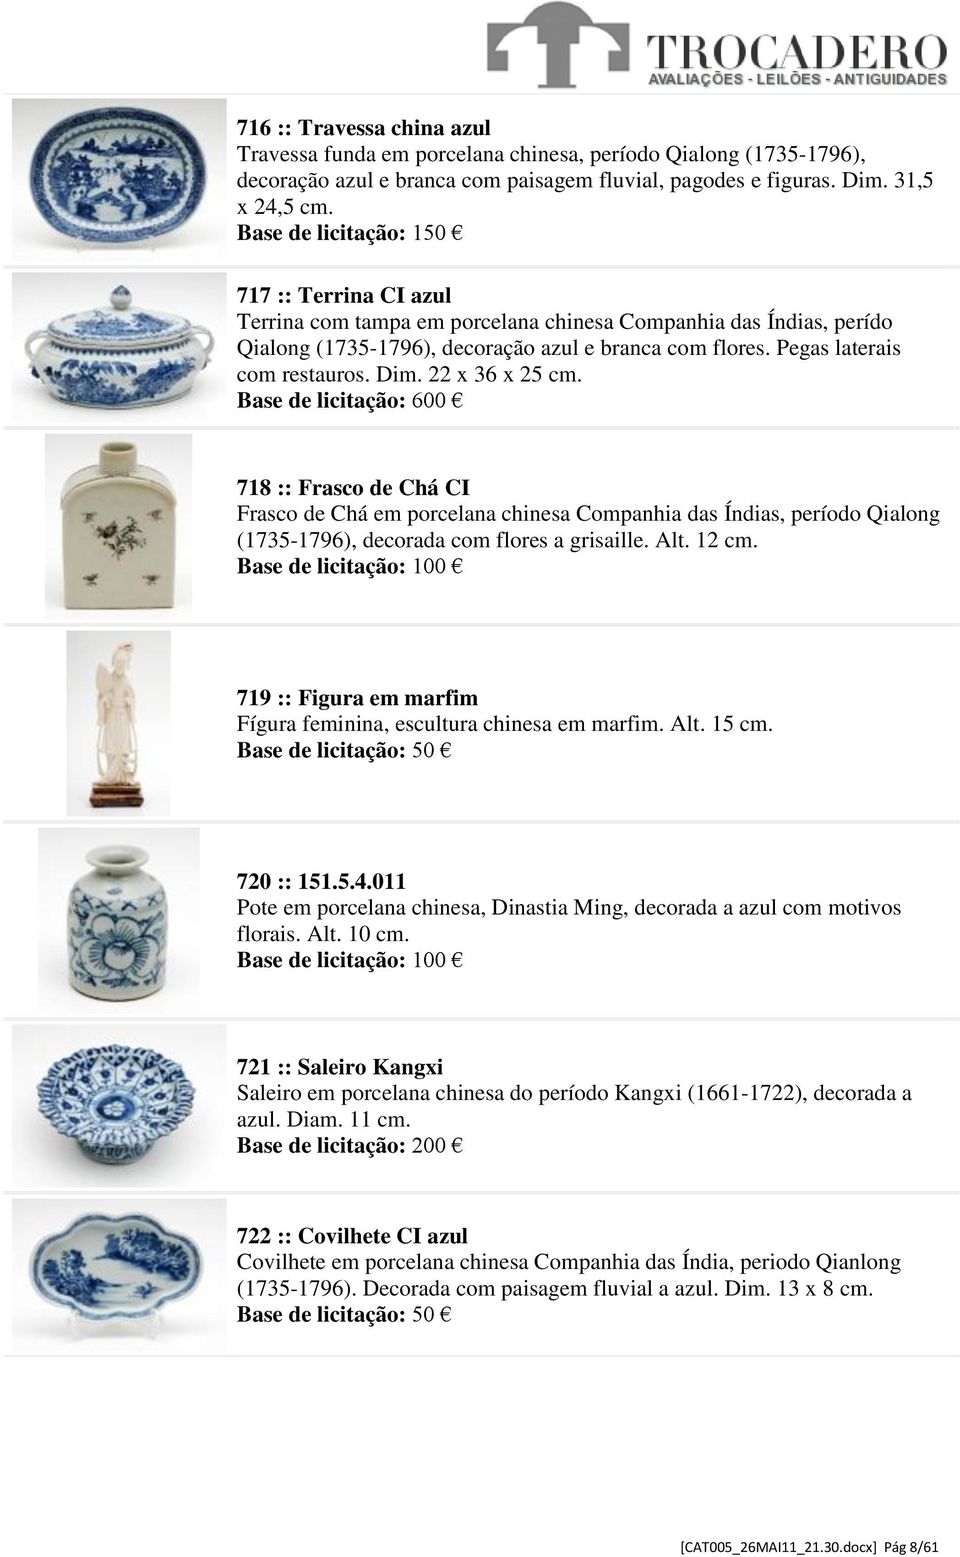 Base de licitação: 600 718 :: Frasco de Chá CI Frasco de Chá em porcelana chinesa Companhia das Índias, período Qialong (1735-1796), decorada com flores a grisaille. Alt. 12 cm.